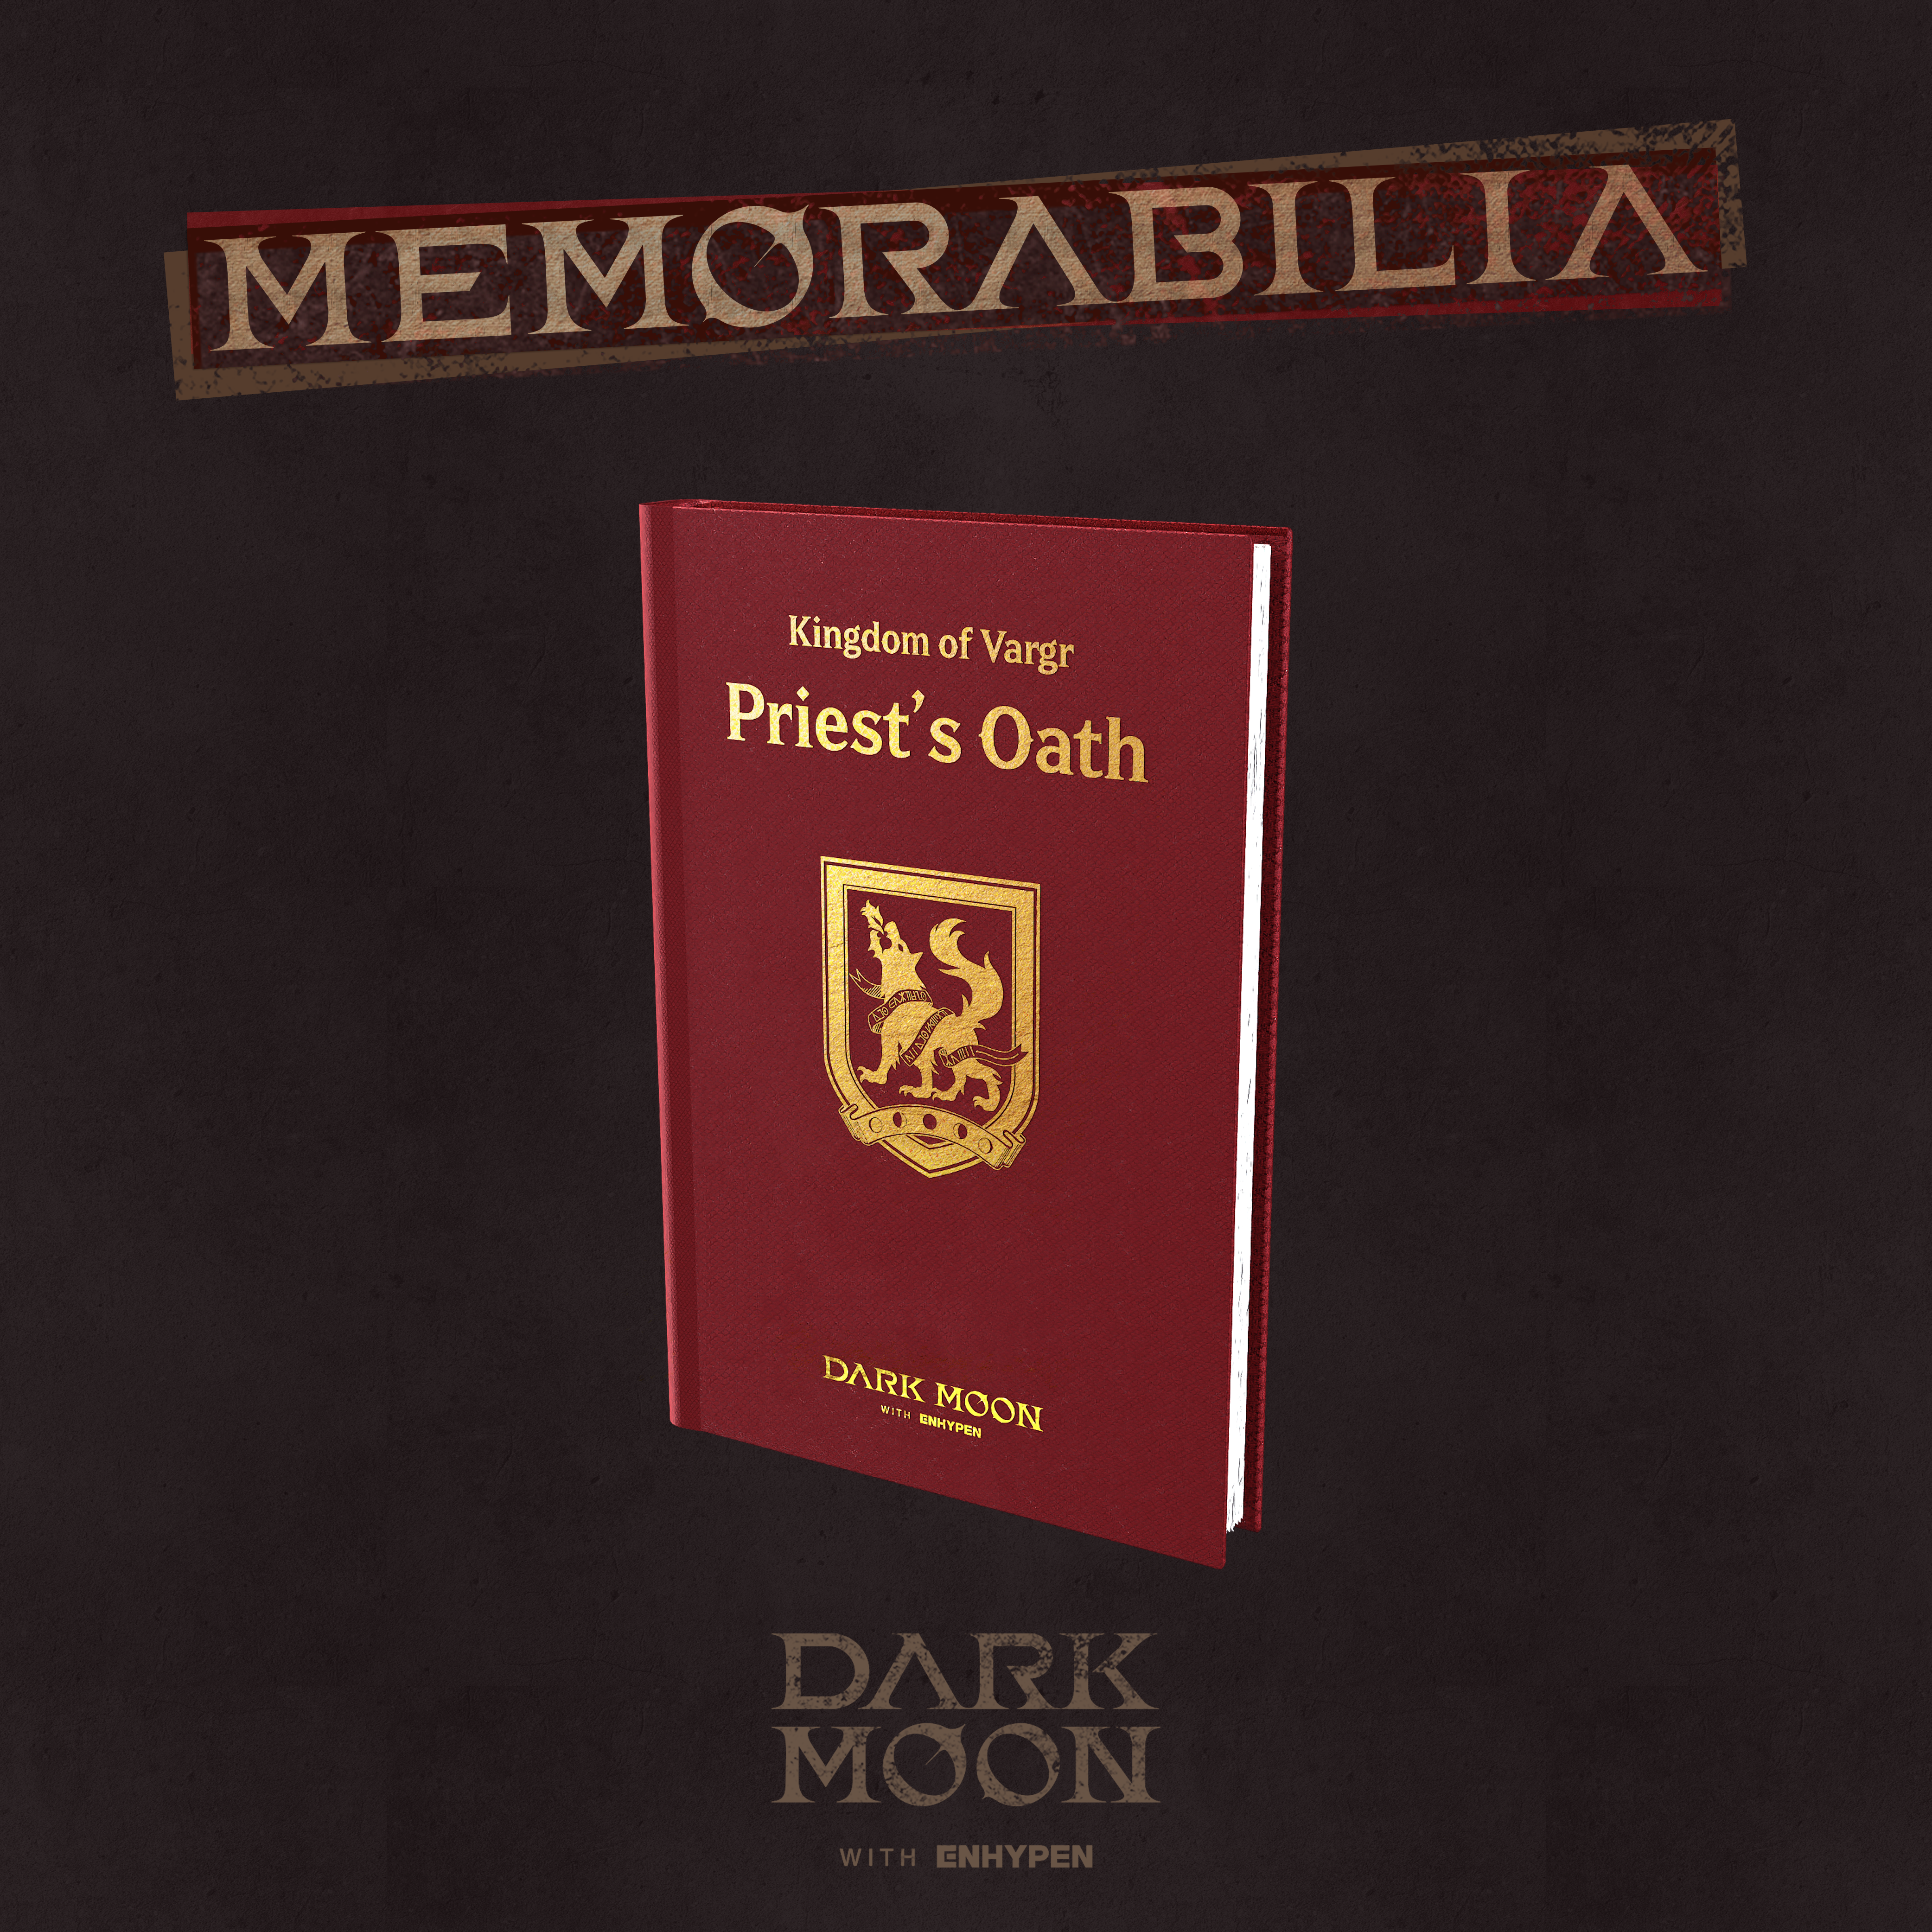 [PRE-ORDER] ENHYPEN - DARK MOON SPECIAL ALBUM MEMORABILIA (Vargr ver.)